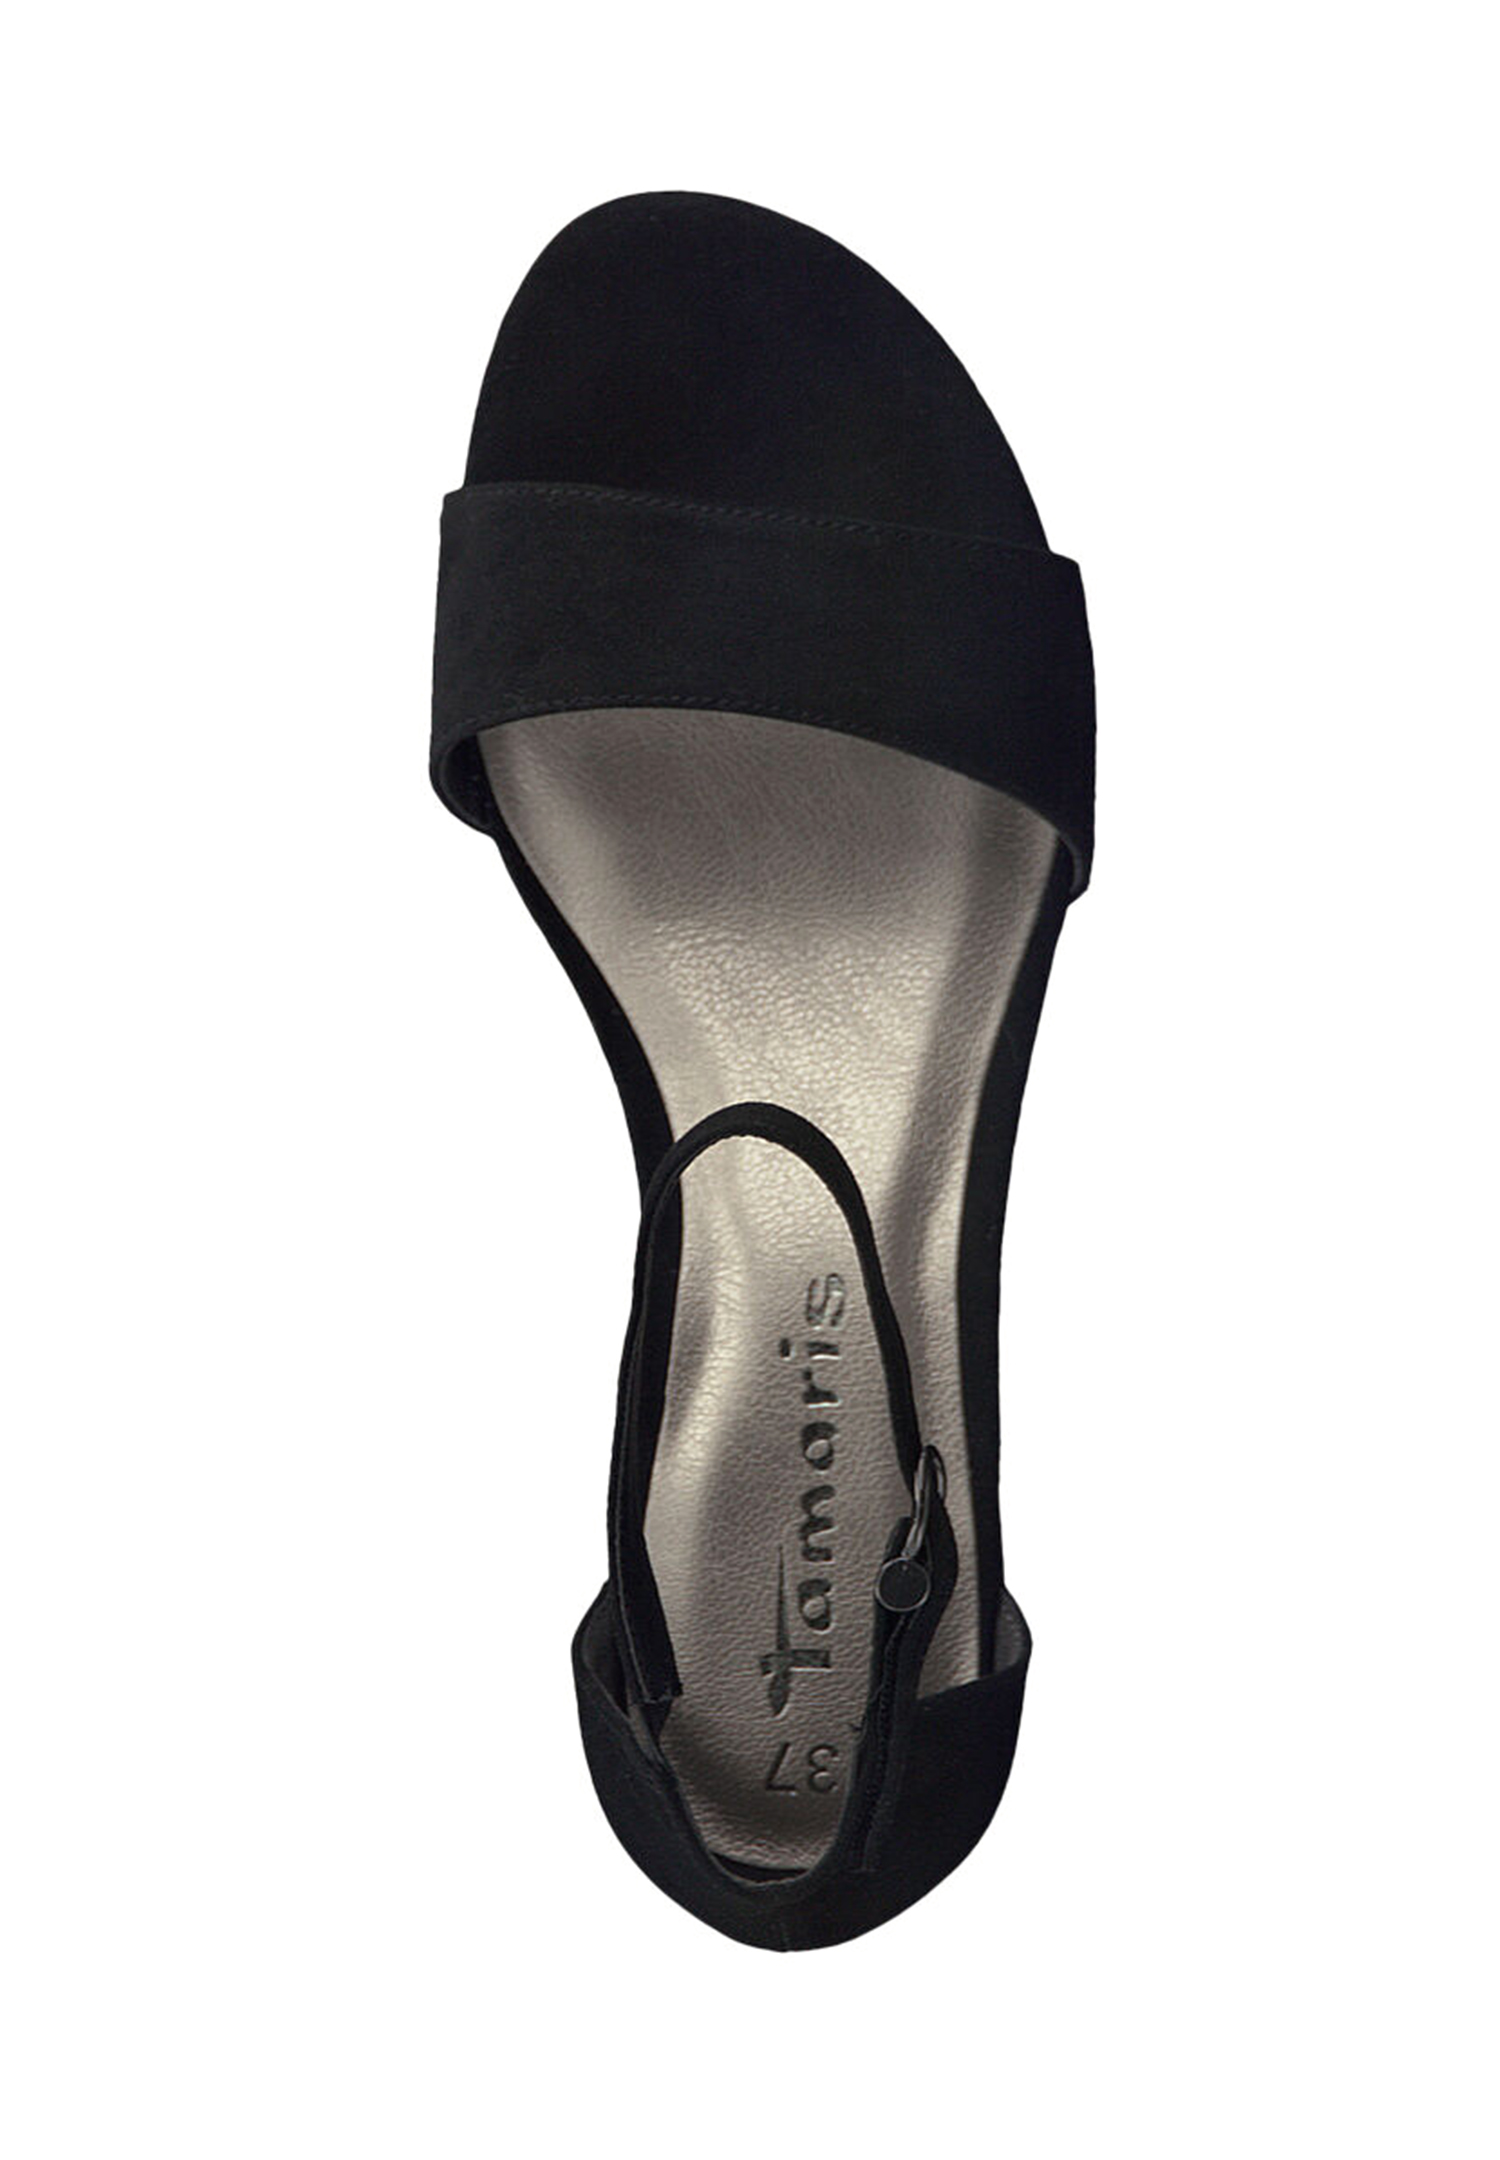 Tamaris Damen Sandalette 1-28201-42 001 Frauen Schuhe M2820142 schwarz